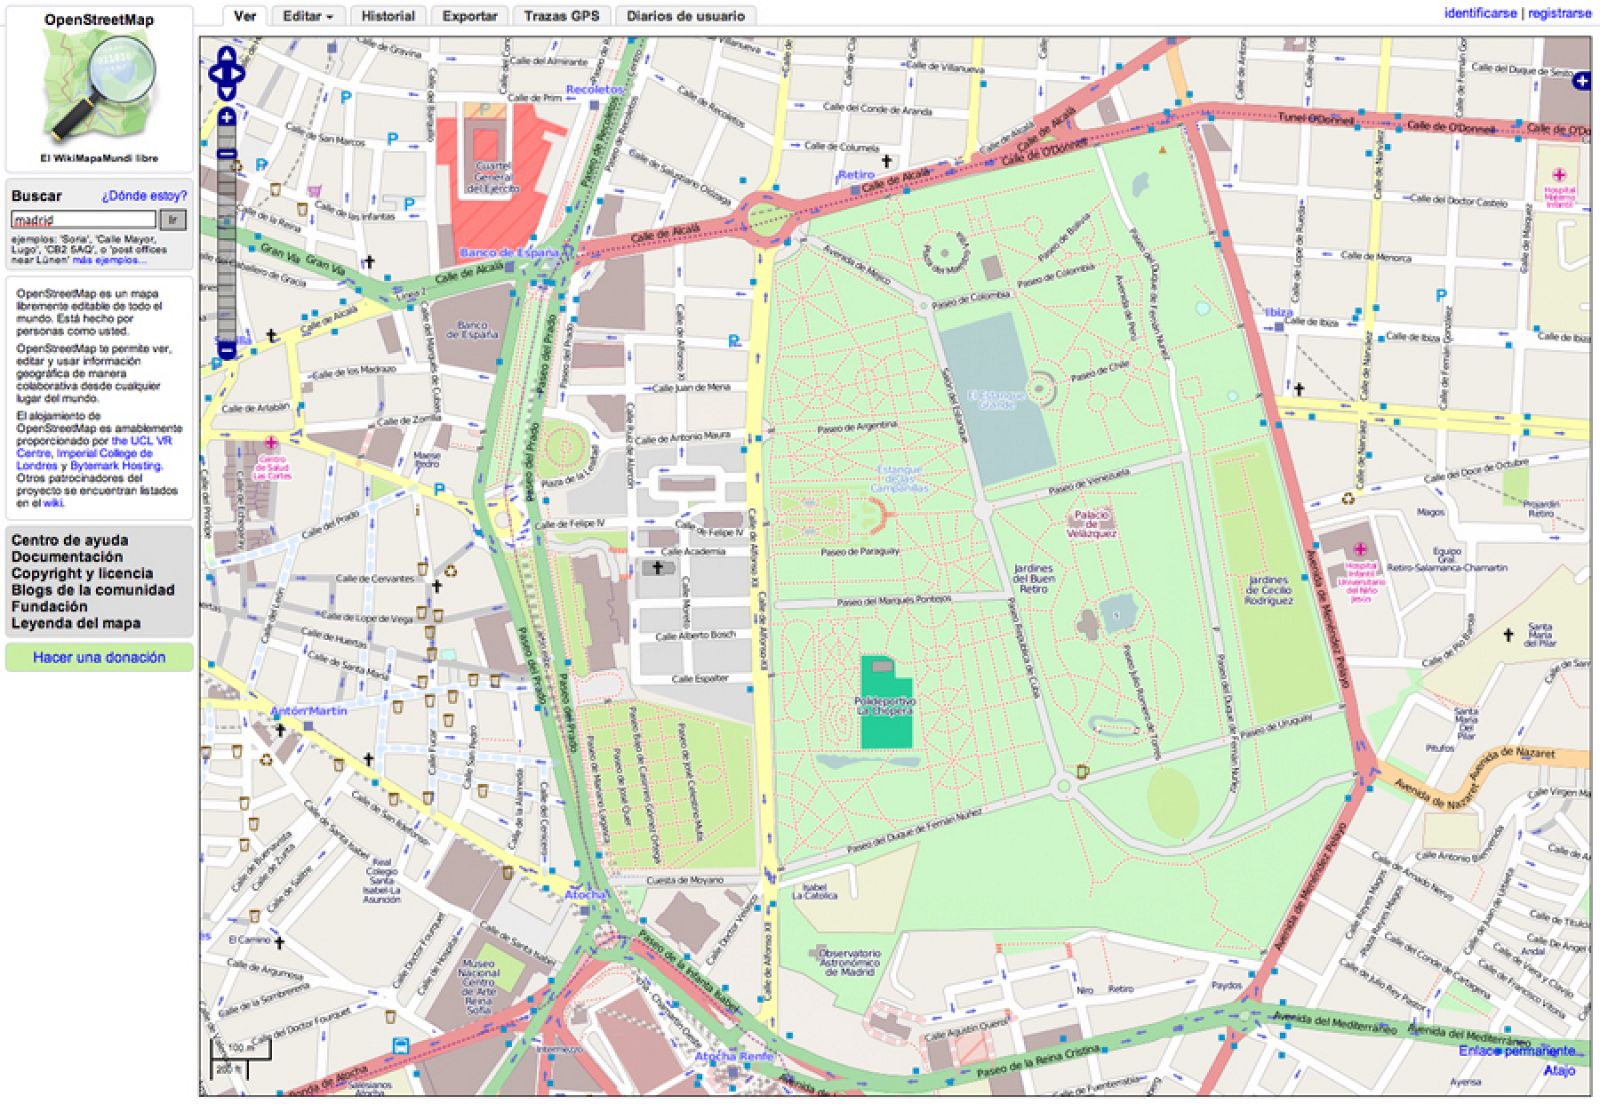 Así se ve un mapa del centro de Madrid en OpenStreetMap